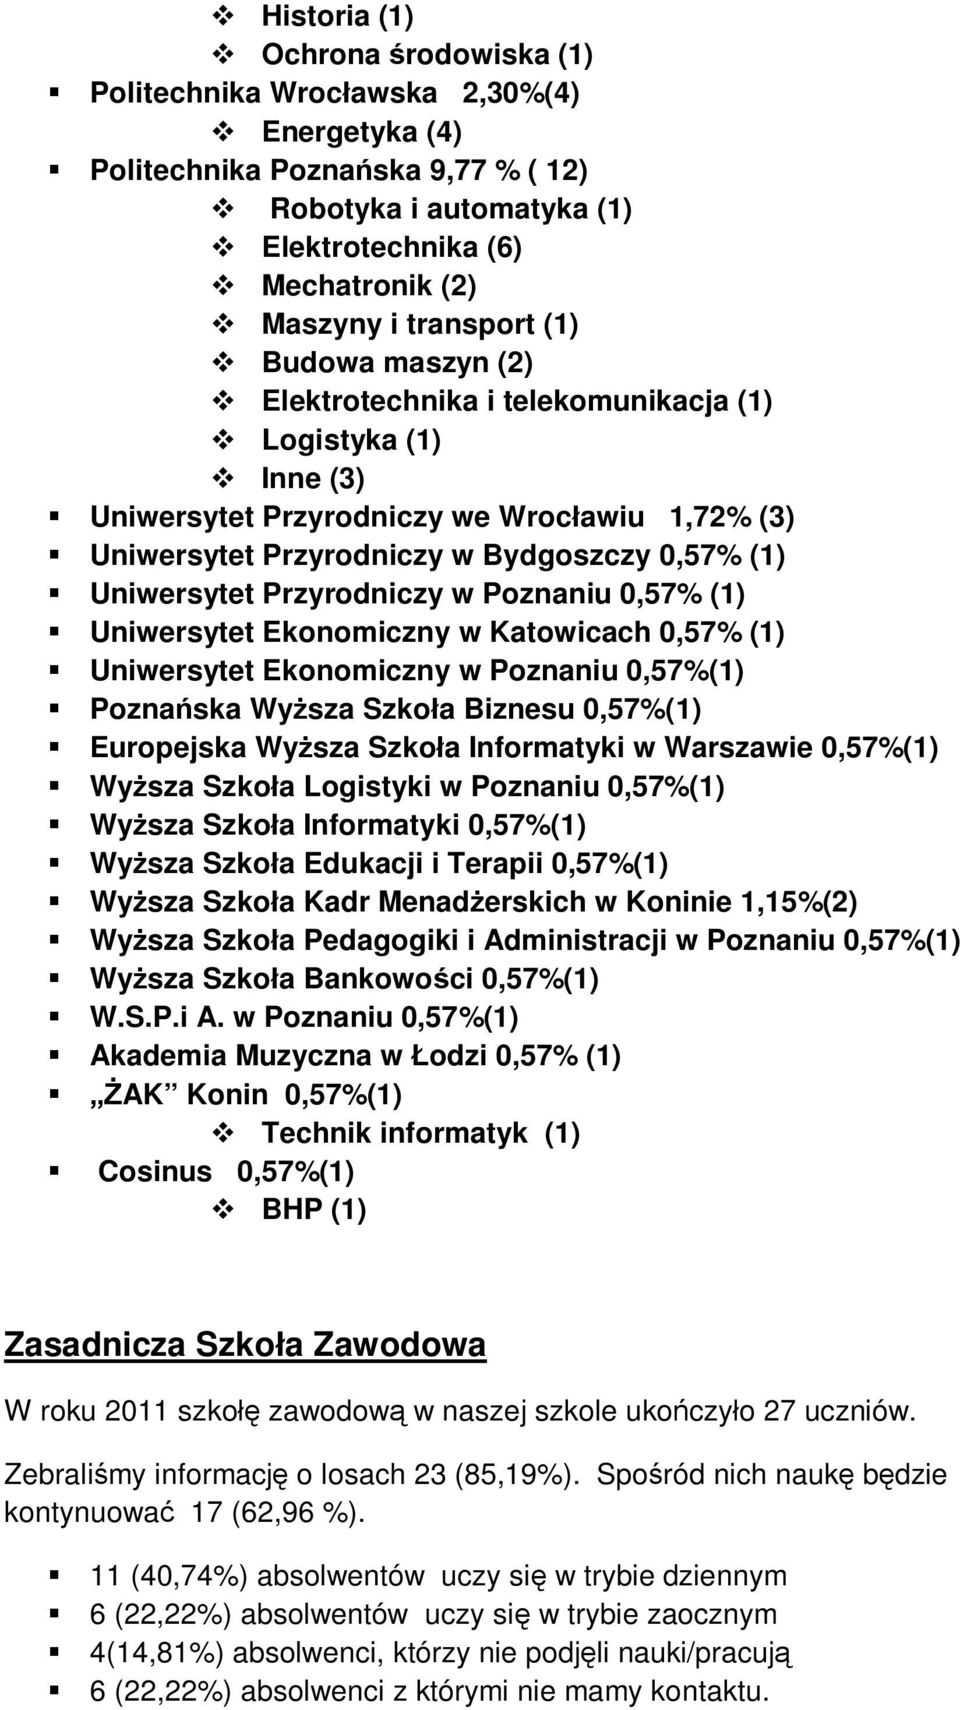 0,57% (1) Uniwersytet Przyrodniczy w Poznaniu 0,57% (1) Uniwersytet Ekonomiczny w Katowicach 0,57% (1) Uniwersytet Ekonomiczny w Poznaniu 0,57%(1) Poznańska Wyższa Szkoła Biznesu 0,57%(1) Europejska